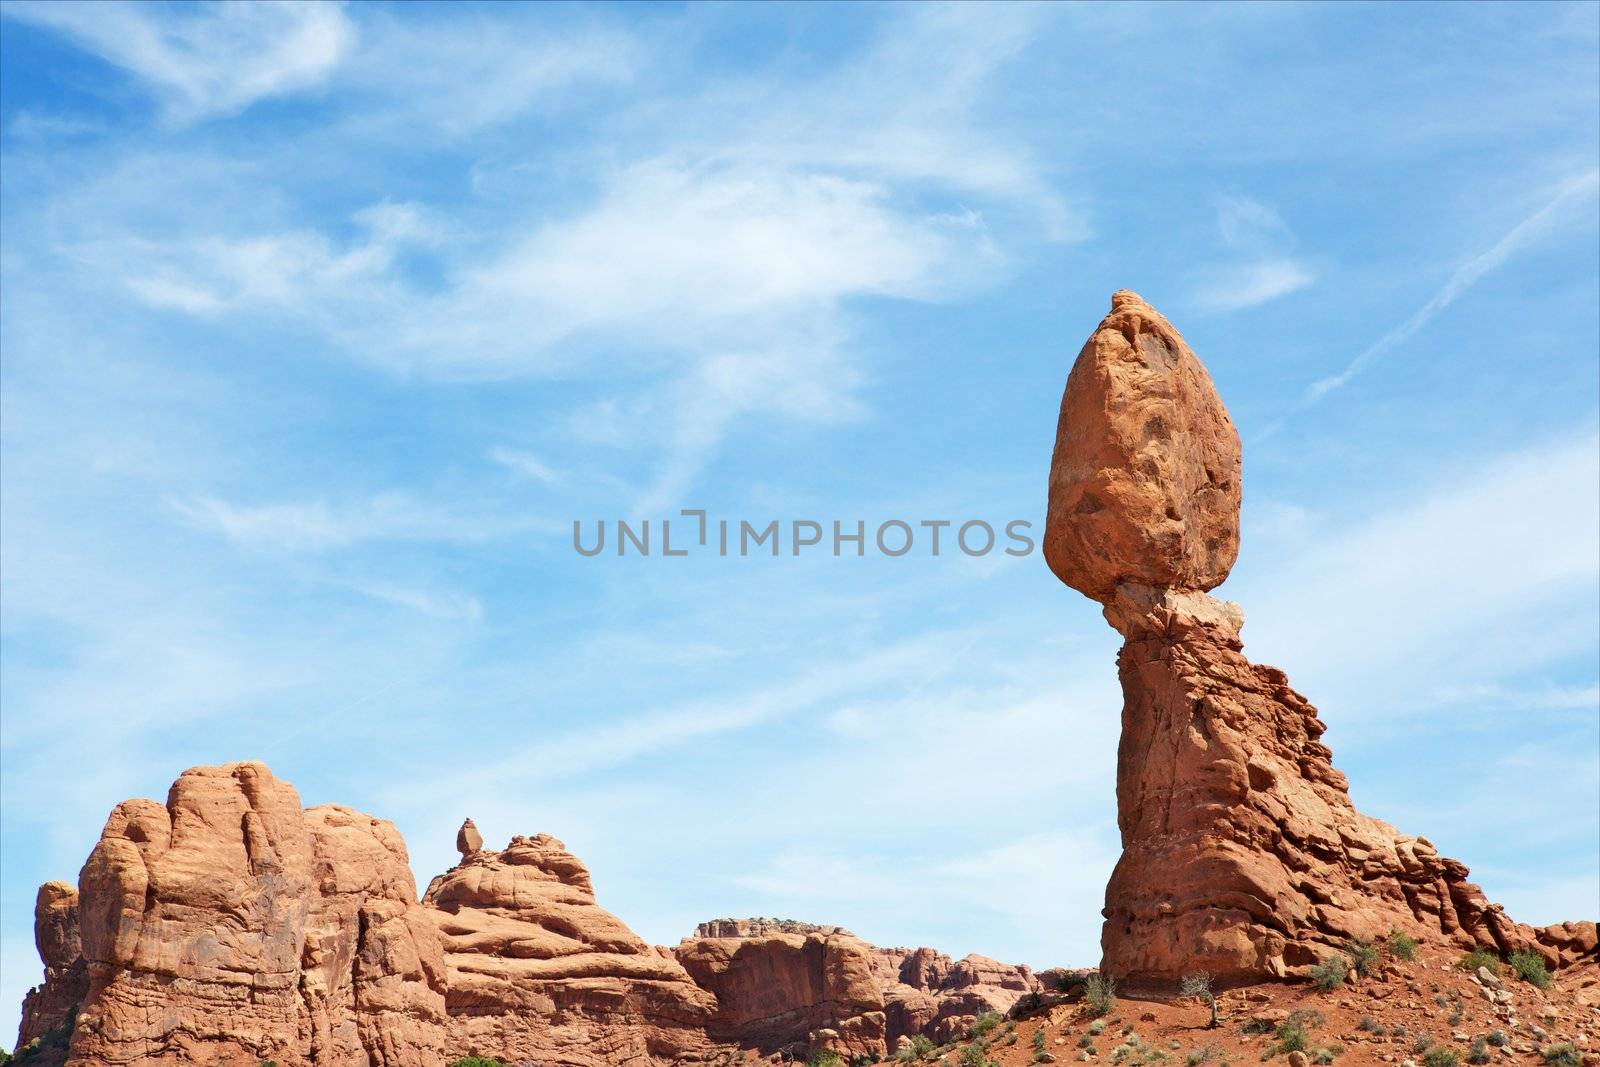 Balancing rock daytime by bobkeenan